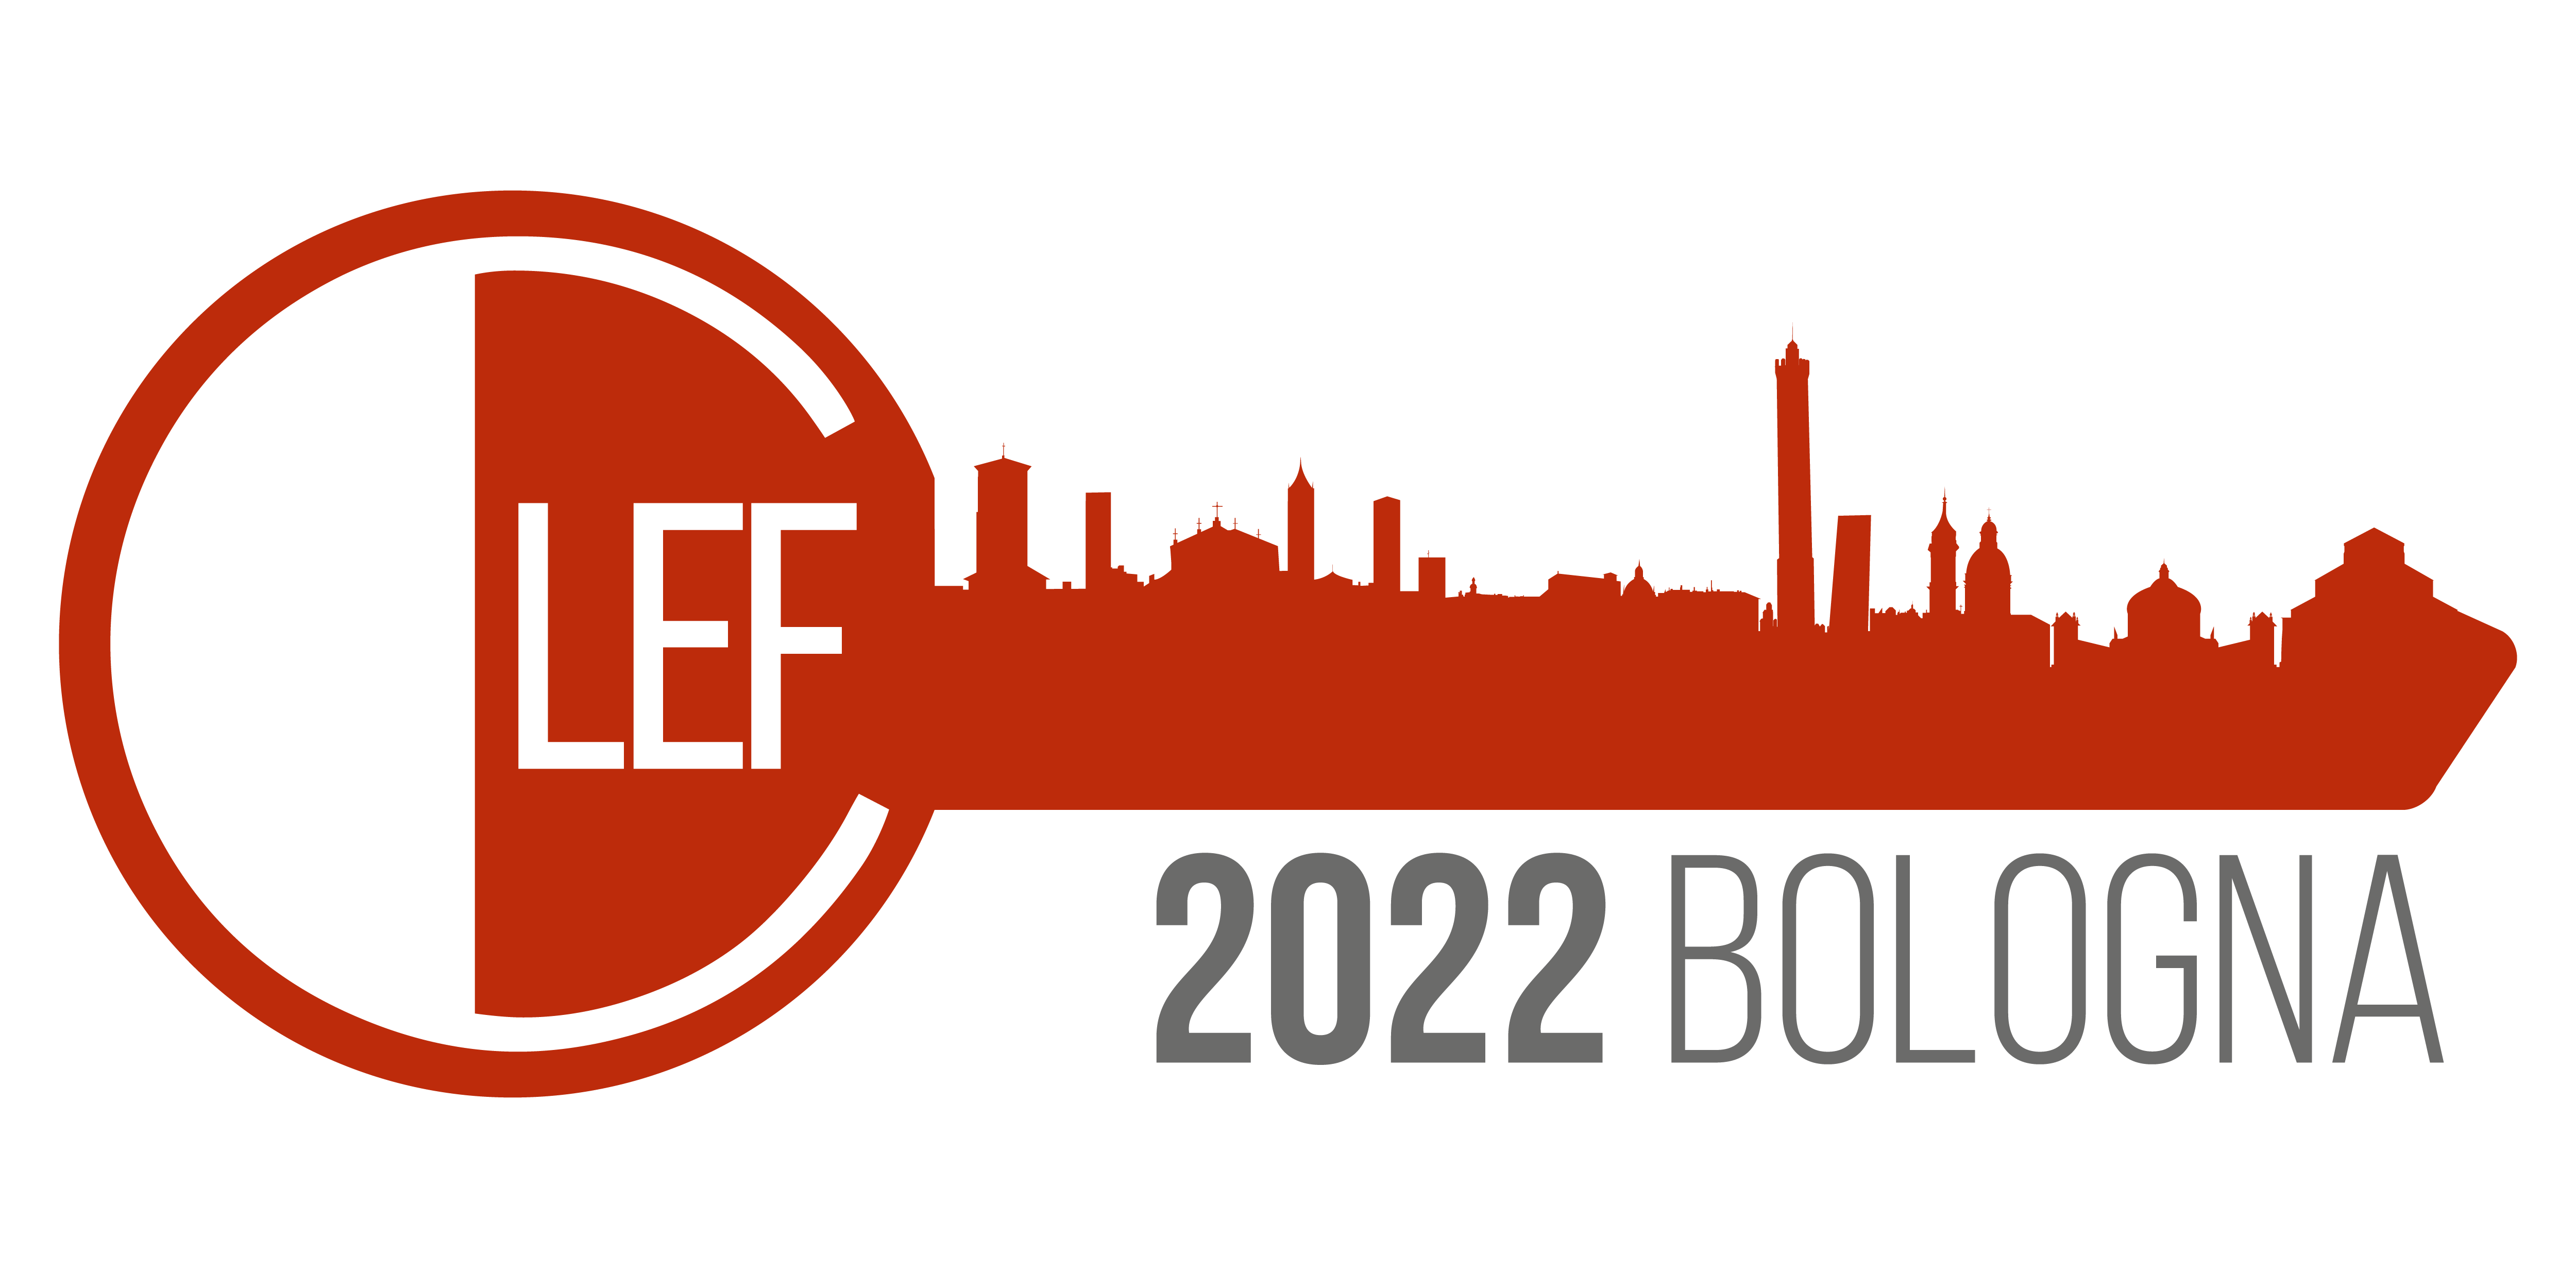 CLEF Bologna 2022 logo